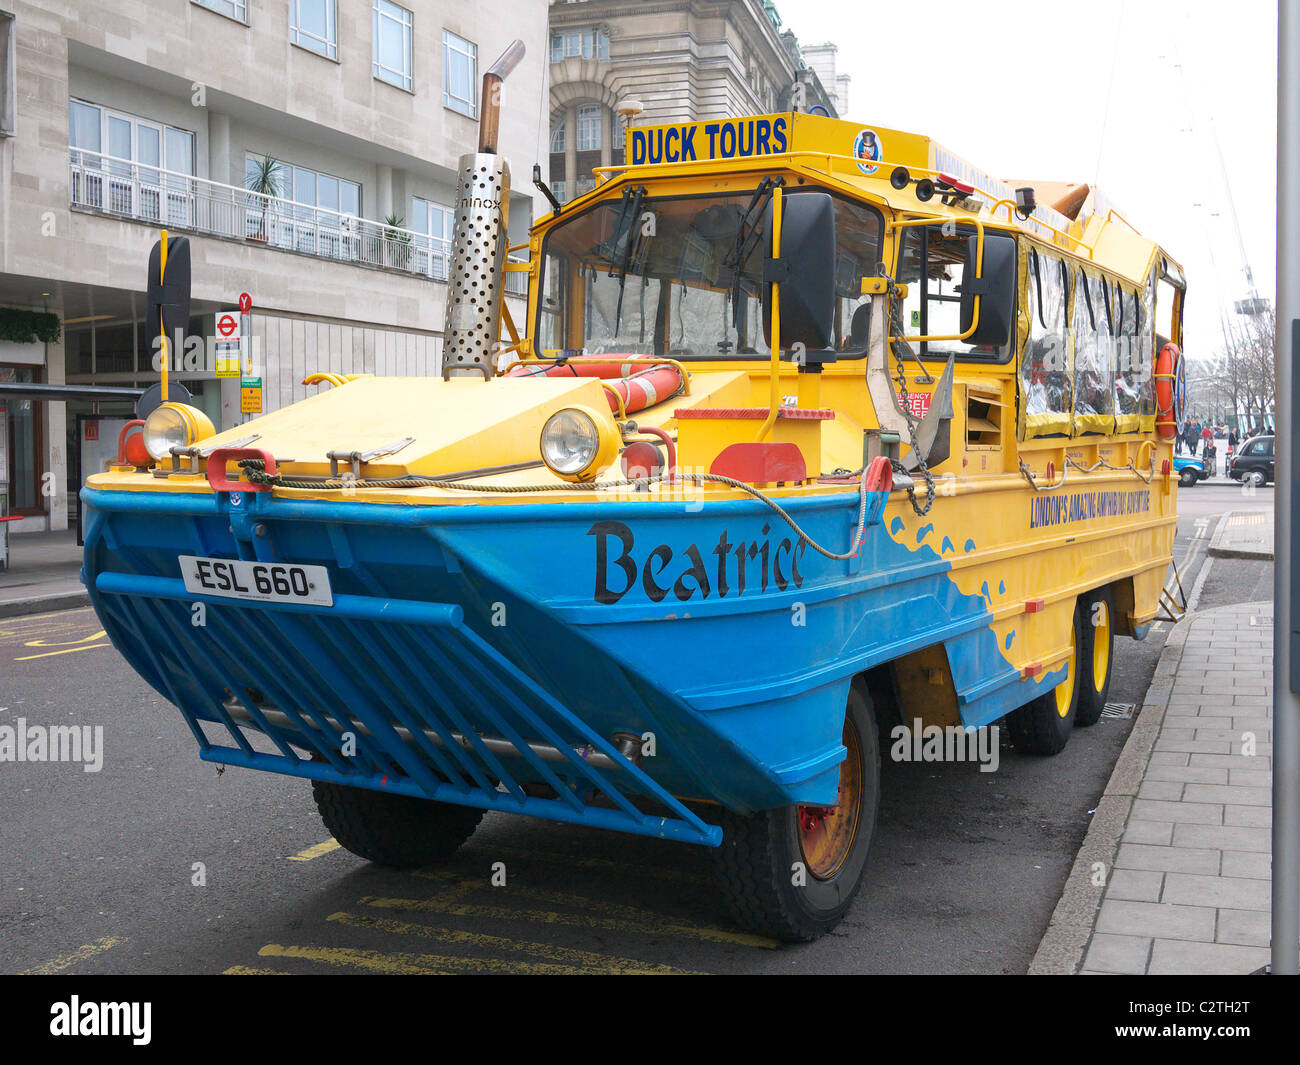 Vista frontale di uno dei anfibio DUKW i veicoli utilizzati per il Duck Tours a Londra Foto Stock